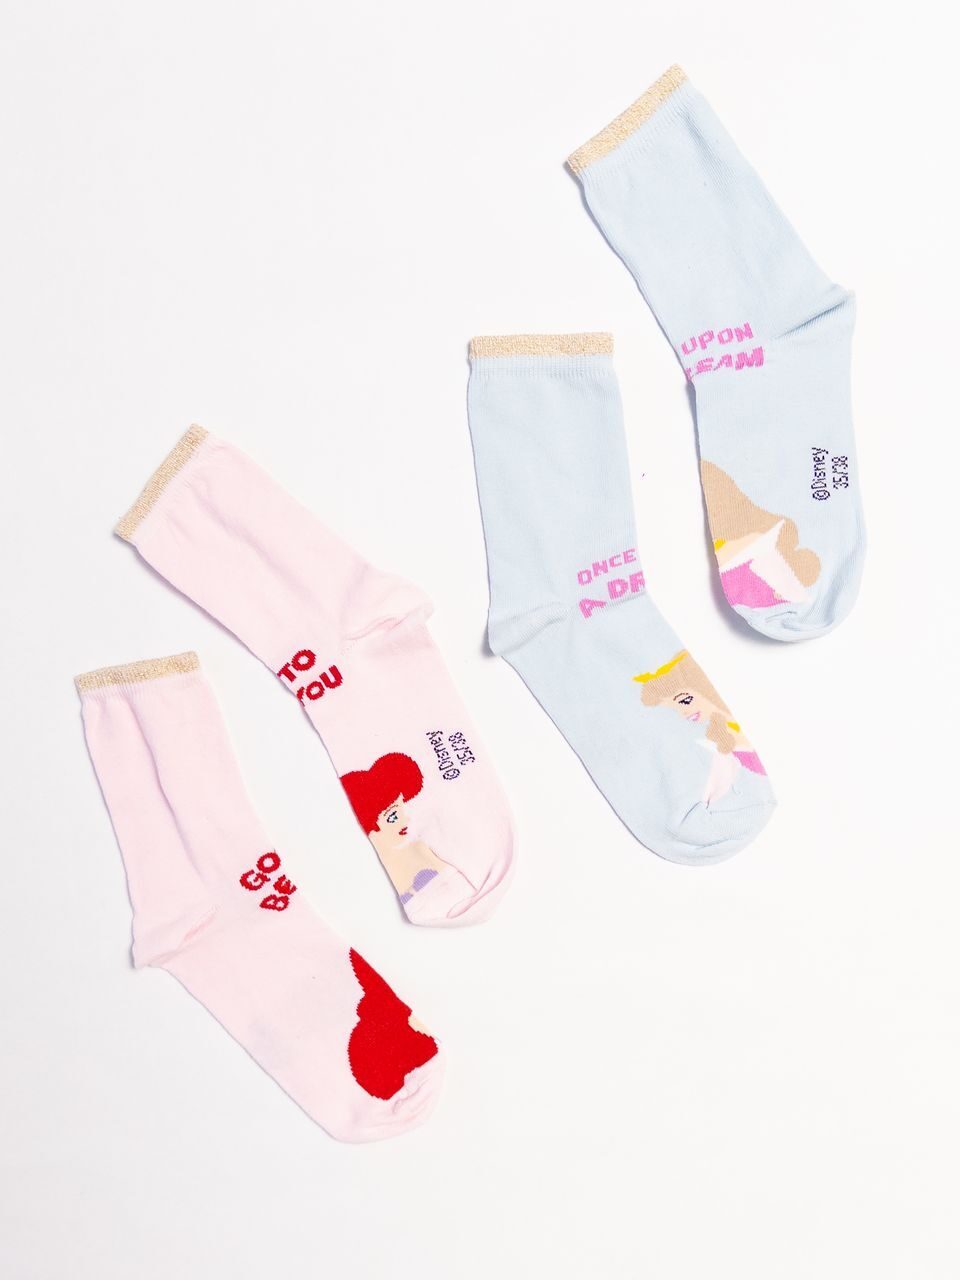 Носки хлопковые длинные для девочки комплект из 2 пар цвет голубой/розовый/люрексная нить принт принцессы Disney длина стопы 22-24 см размер обуви 35-38 OVS